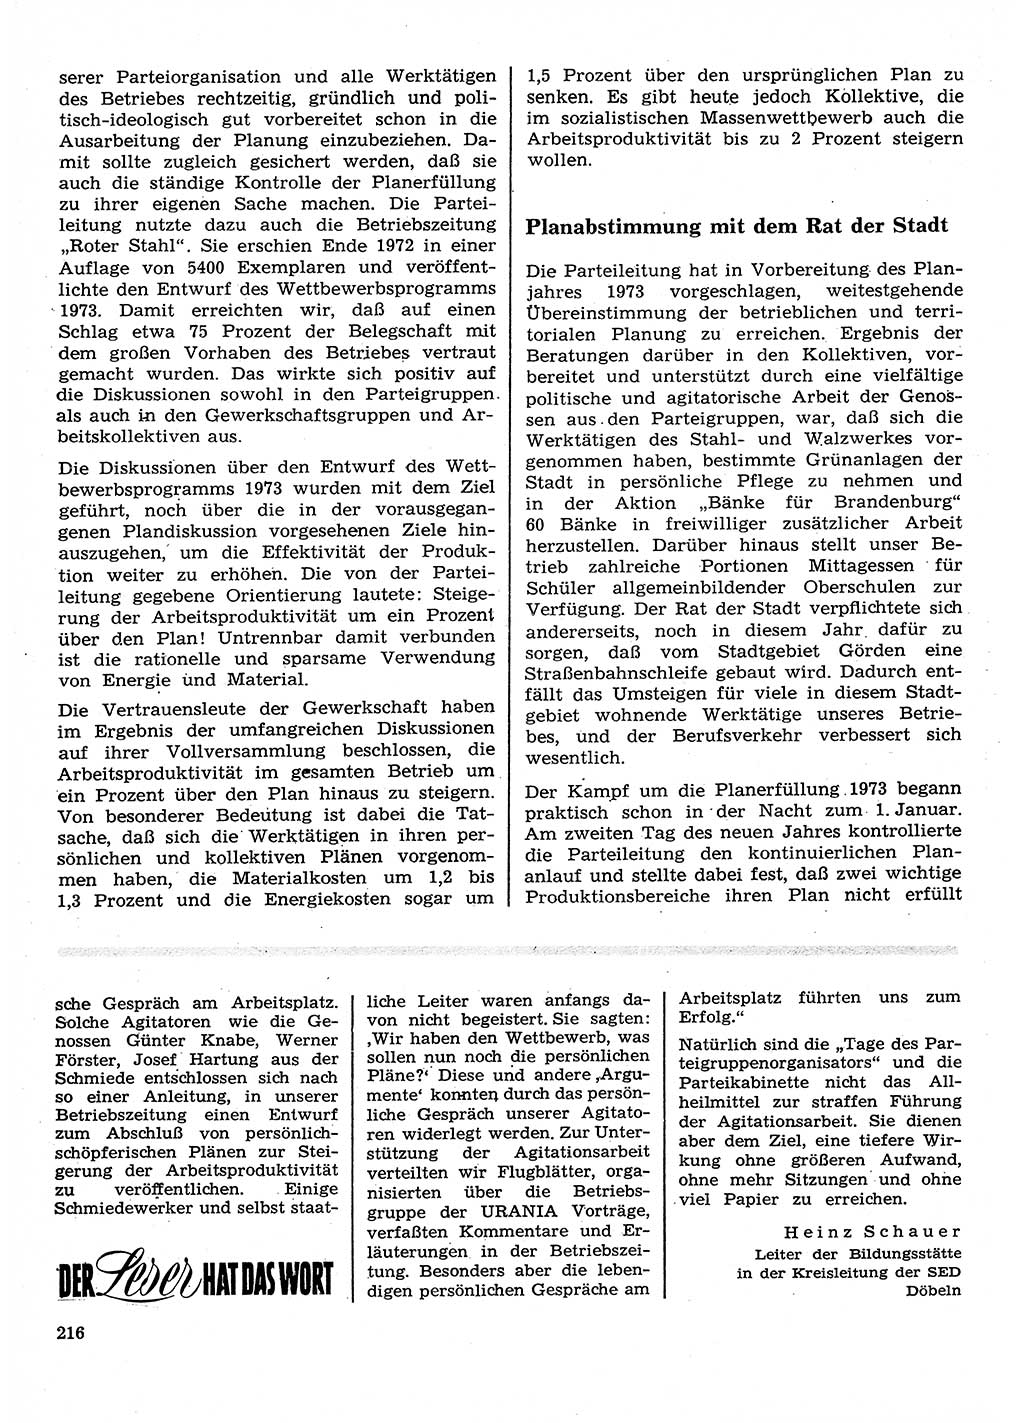 Neuer Weg (NW), Organ des Zentralkomitees (ZK) der SED (Sozialistische Einheitspartei Deutschlands) für Fragen des Parteilebens, 28. Jahrgang [Deutsche Demokratische Republik (DDR)] 1973, Seite 216 (NW ZK SED DDR 1973, S. 216)